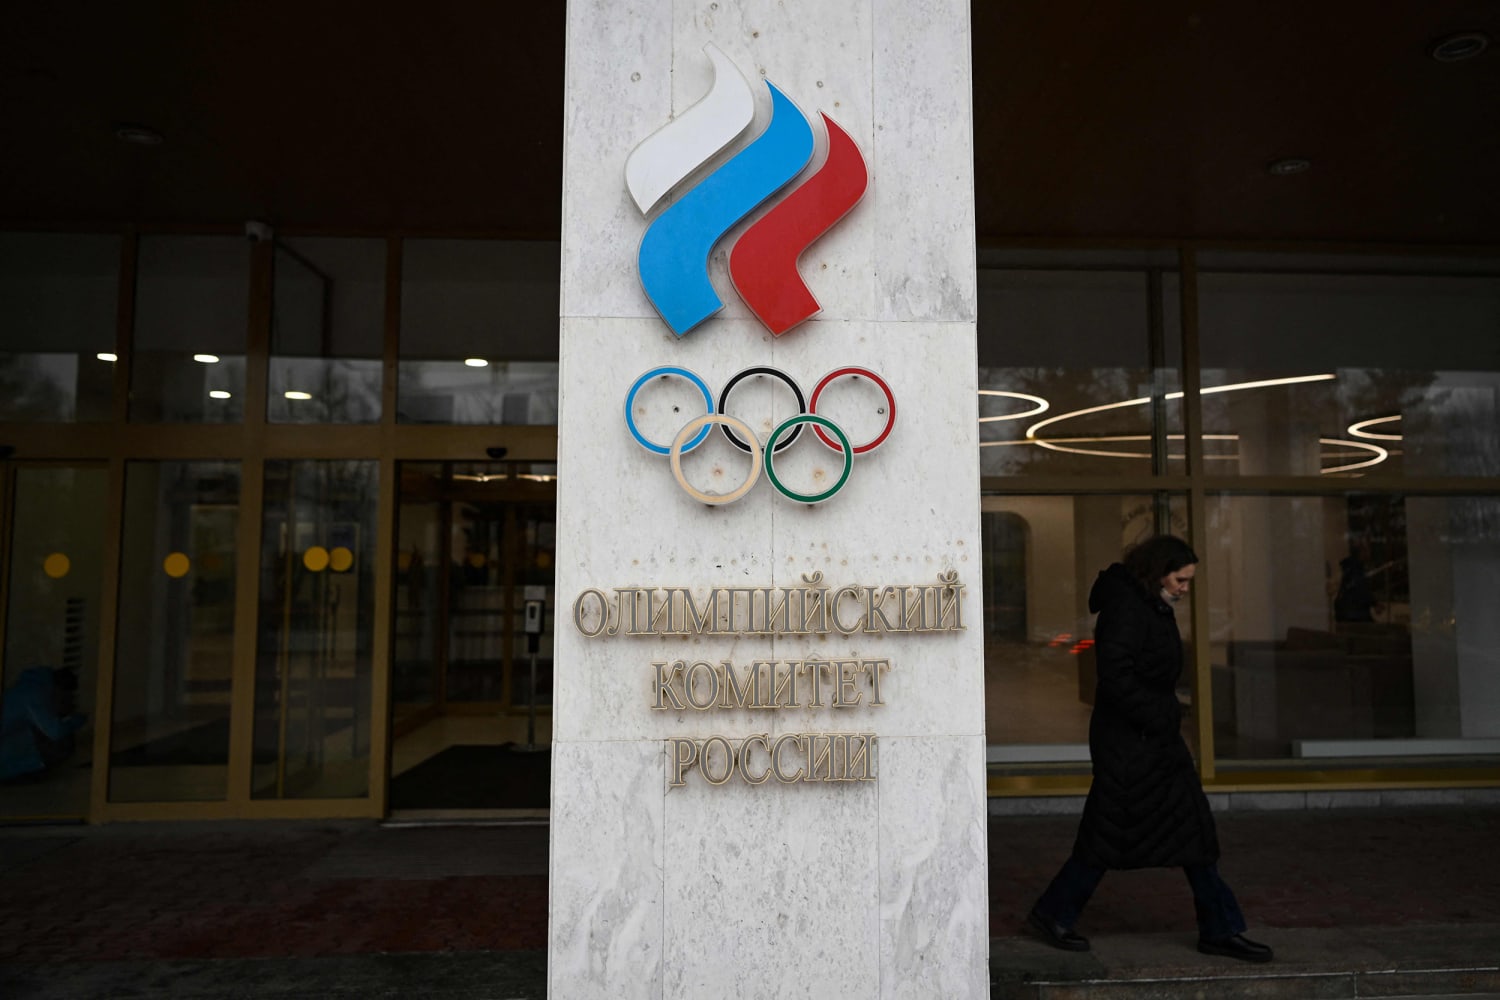 Олимпийский комитет России был приостановлен Международным олимпийским комитетом из-за слияния украинских спортивных организаций